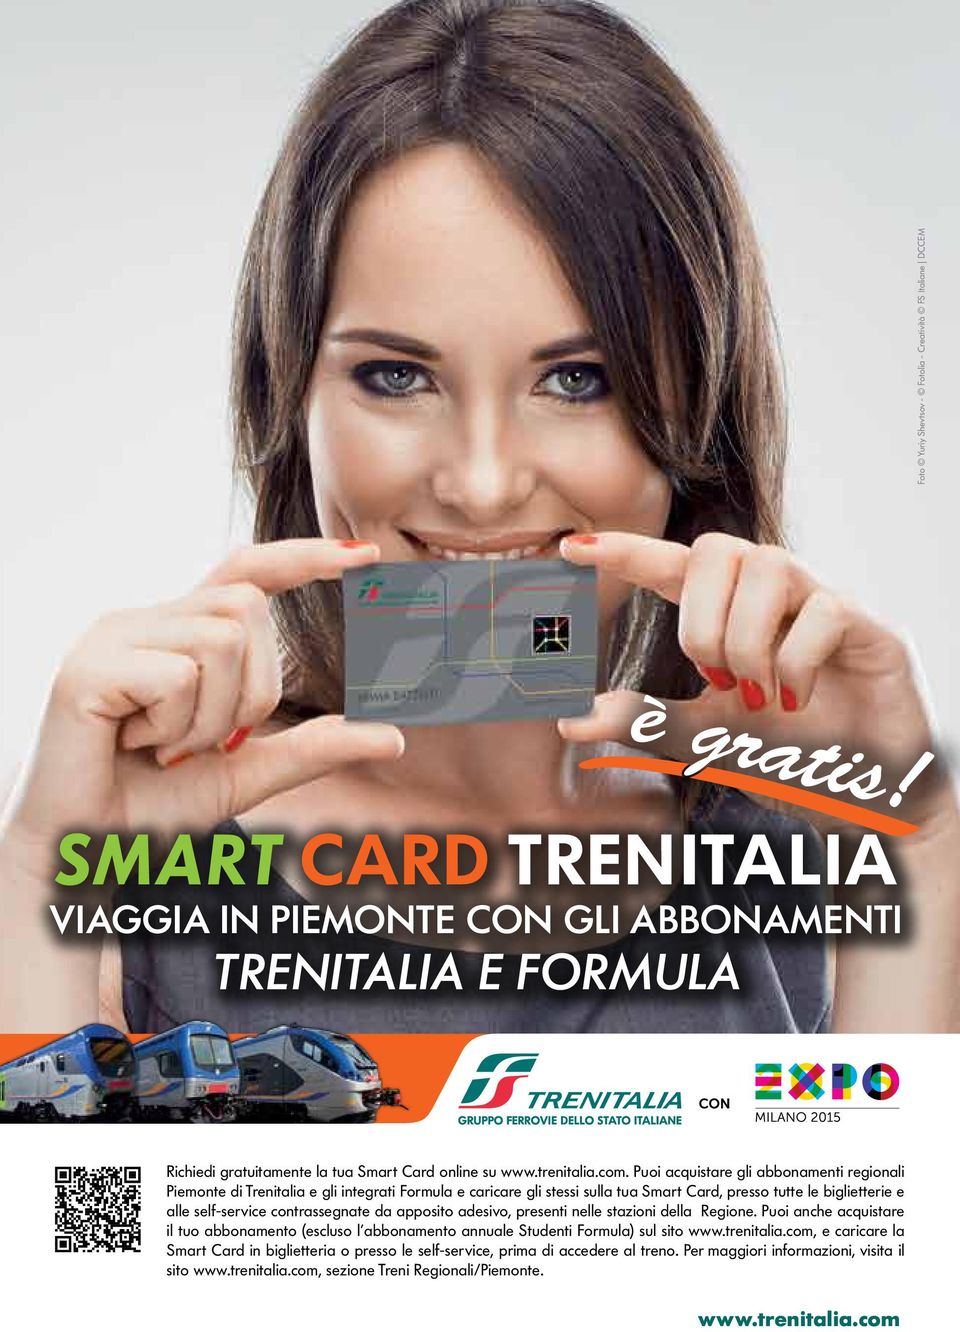 Puoi acquistare gli abbonamenti regionali Piemonte di Trenitalia e gli integrati Formula e caricare gli stessi sulla tua Smart Card, presso tutte le biglietterie e alle self-service contrassegnate da